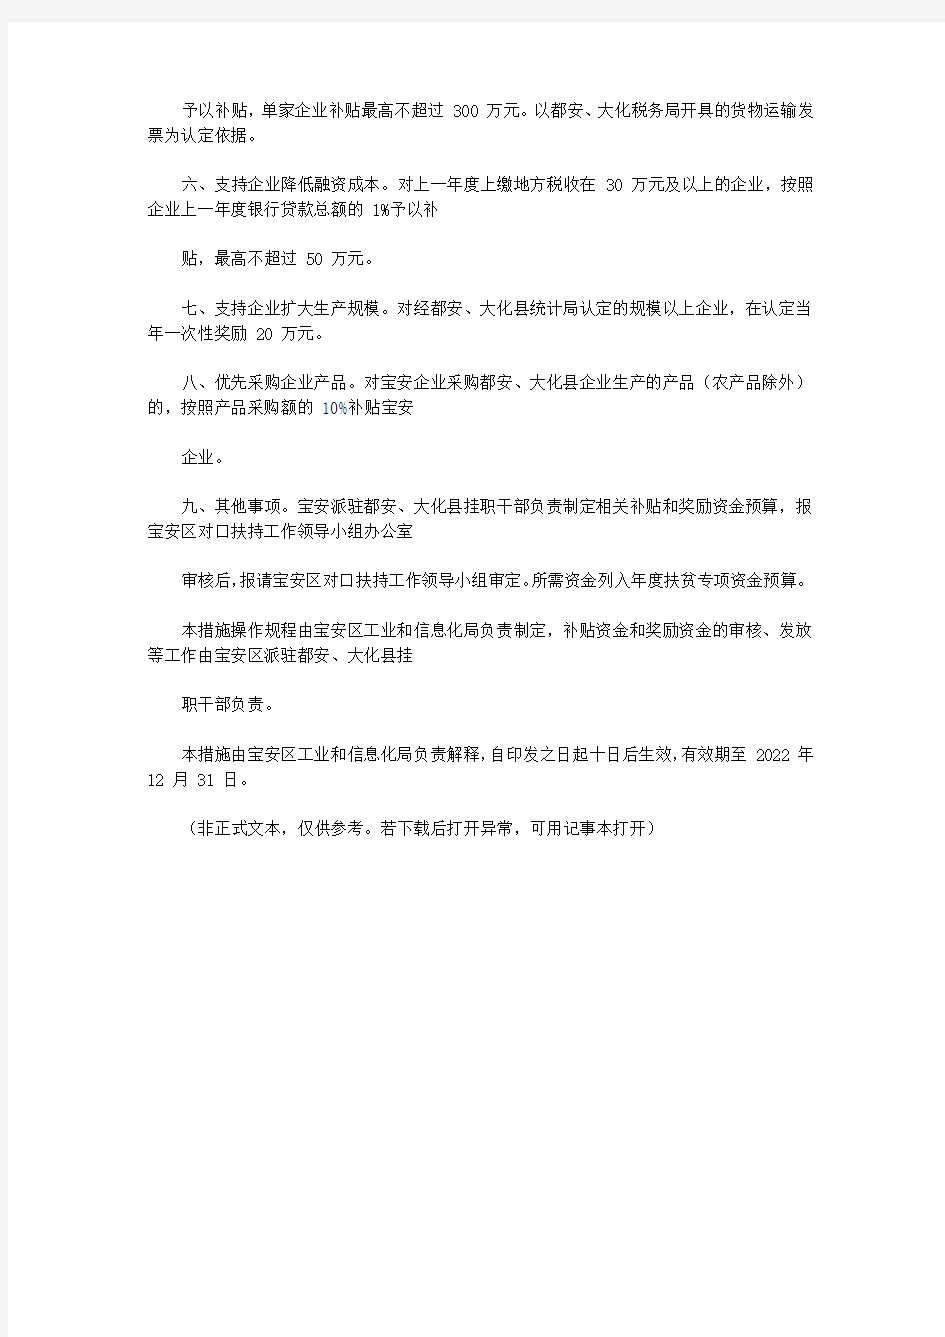 深圳市宝安区人民政府办公室关于印发宝安区支持广西都安、大化瑶族自治县产业发展若干措施的通知